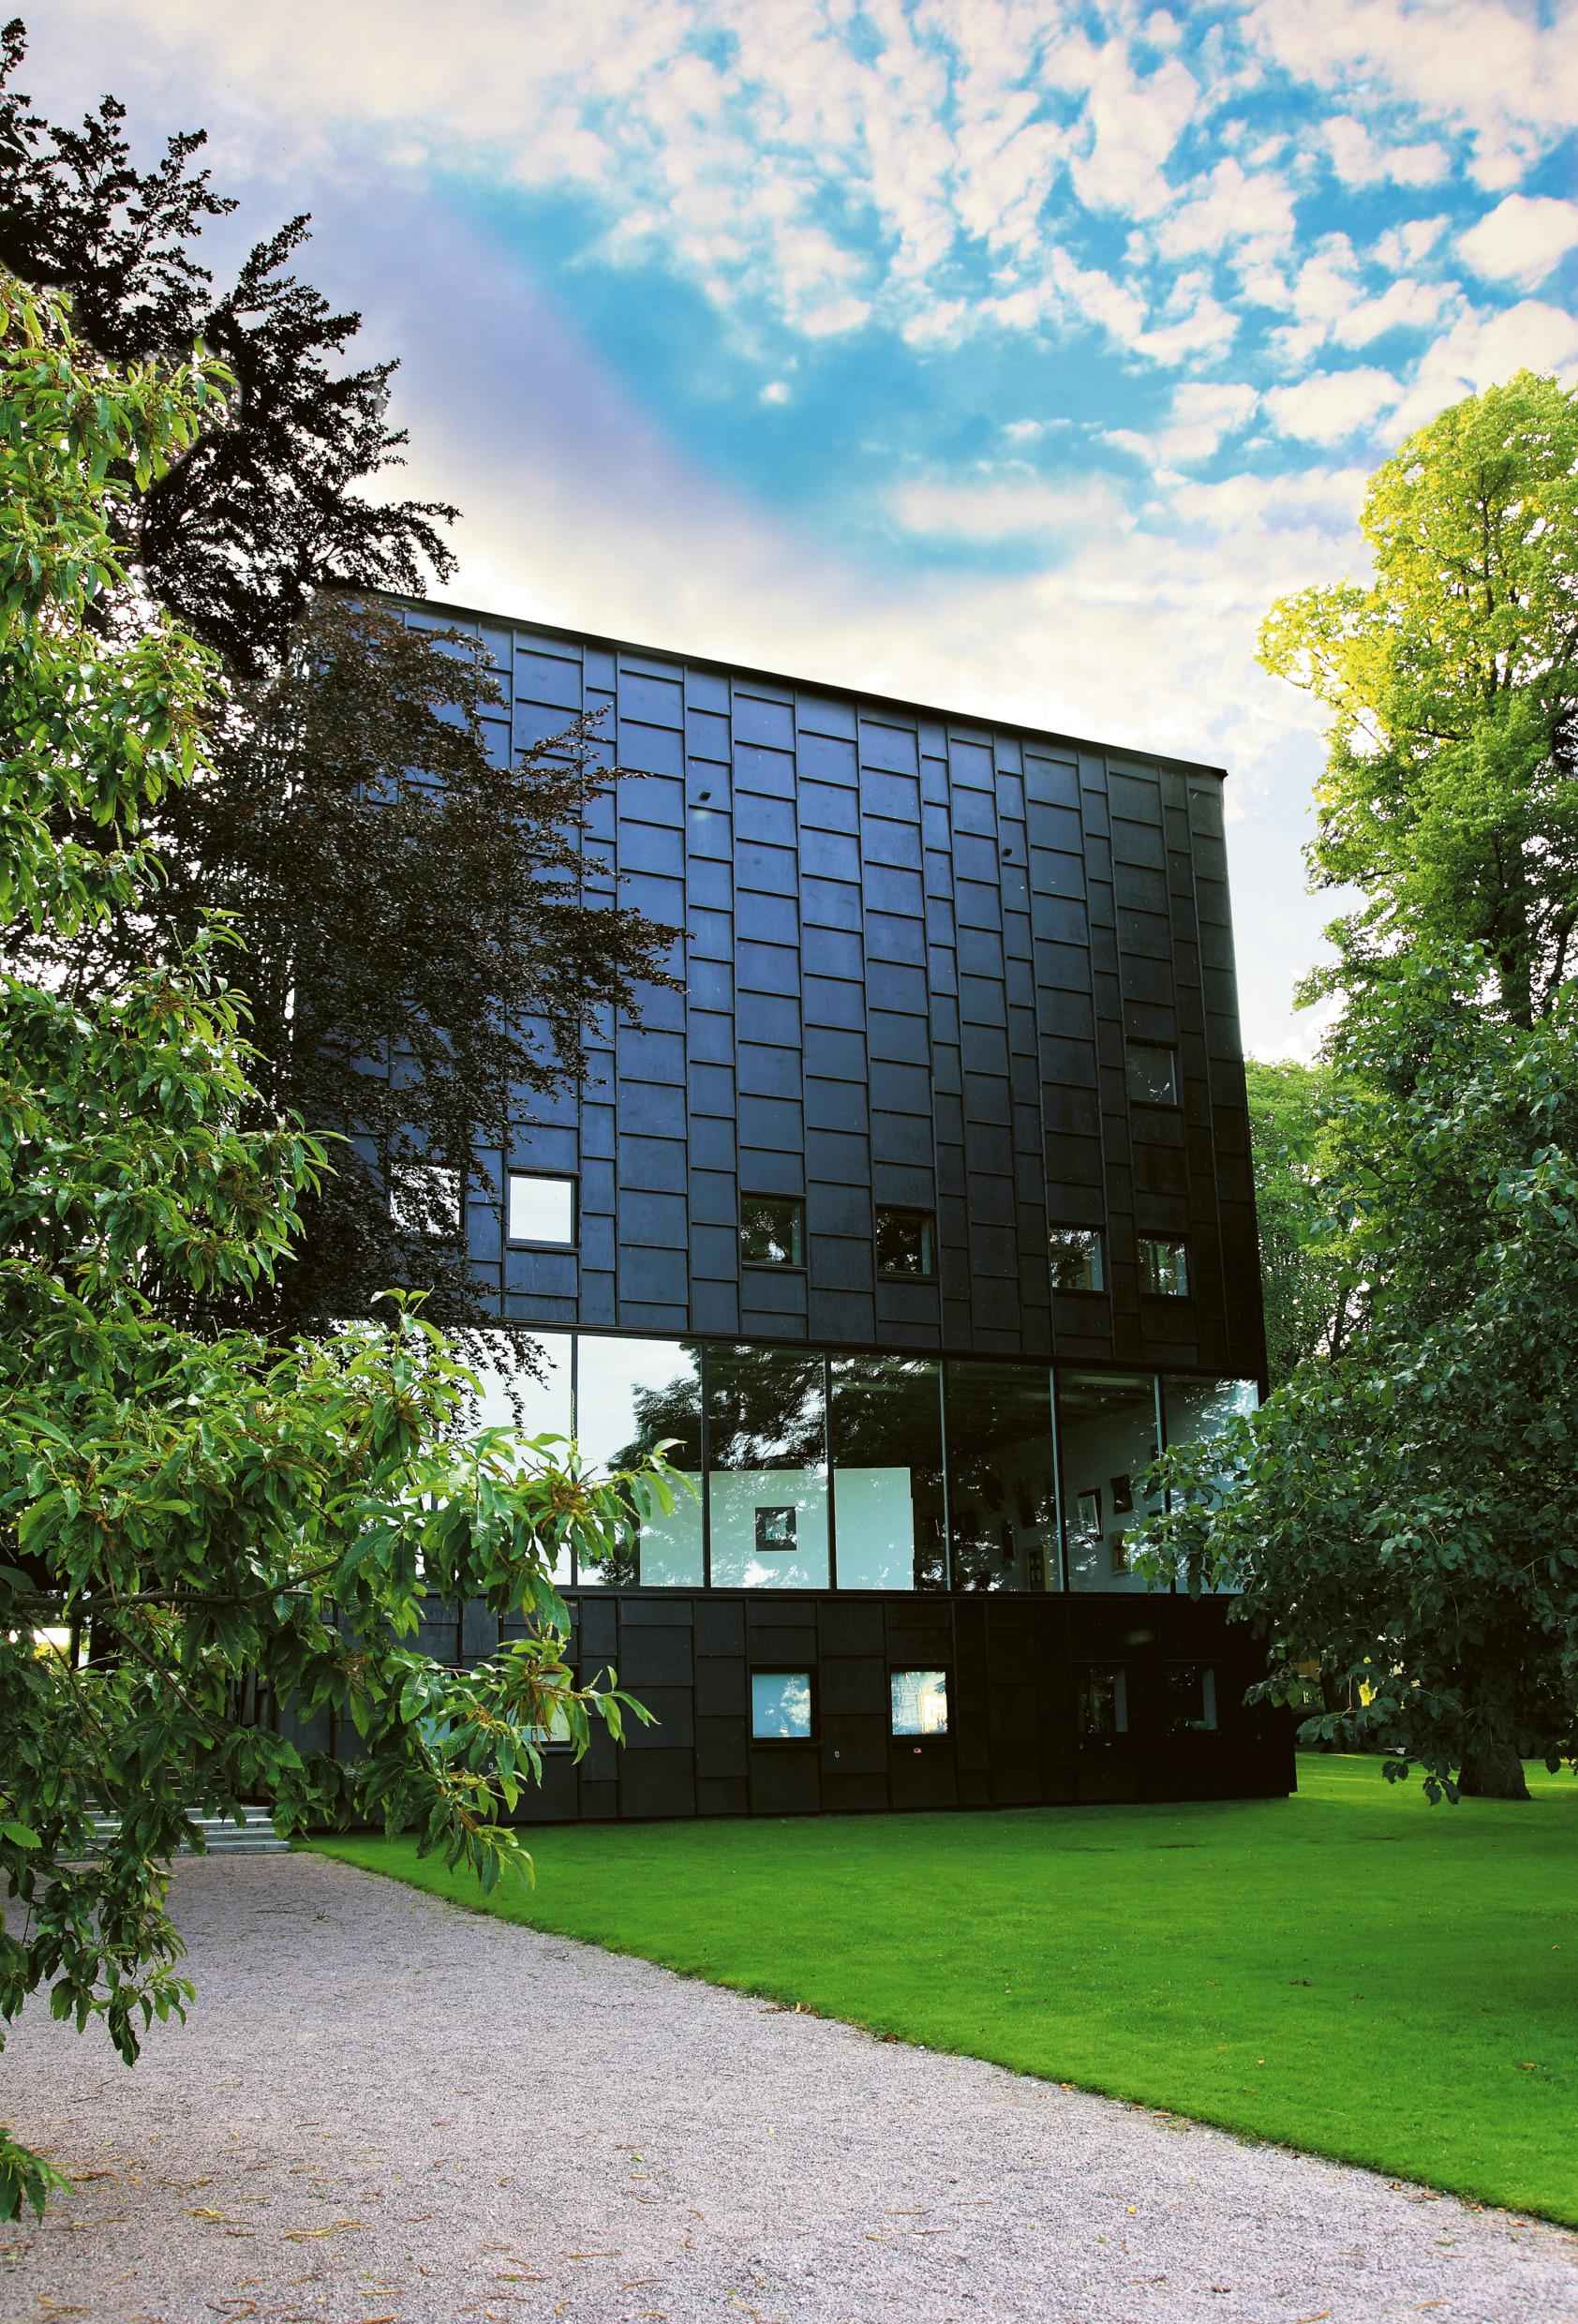 Äußeres des Kunstmuseums Kalmar, eines modernes schwarzen Gebäudes mit einer Reihe großer Fenster, in denen du die Kunstausstellung sehen kannst. Zwei große Bäume und eine grüne Wiese vor dem Gebäude.